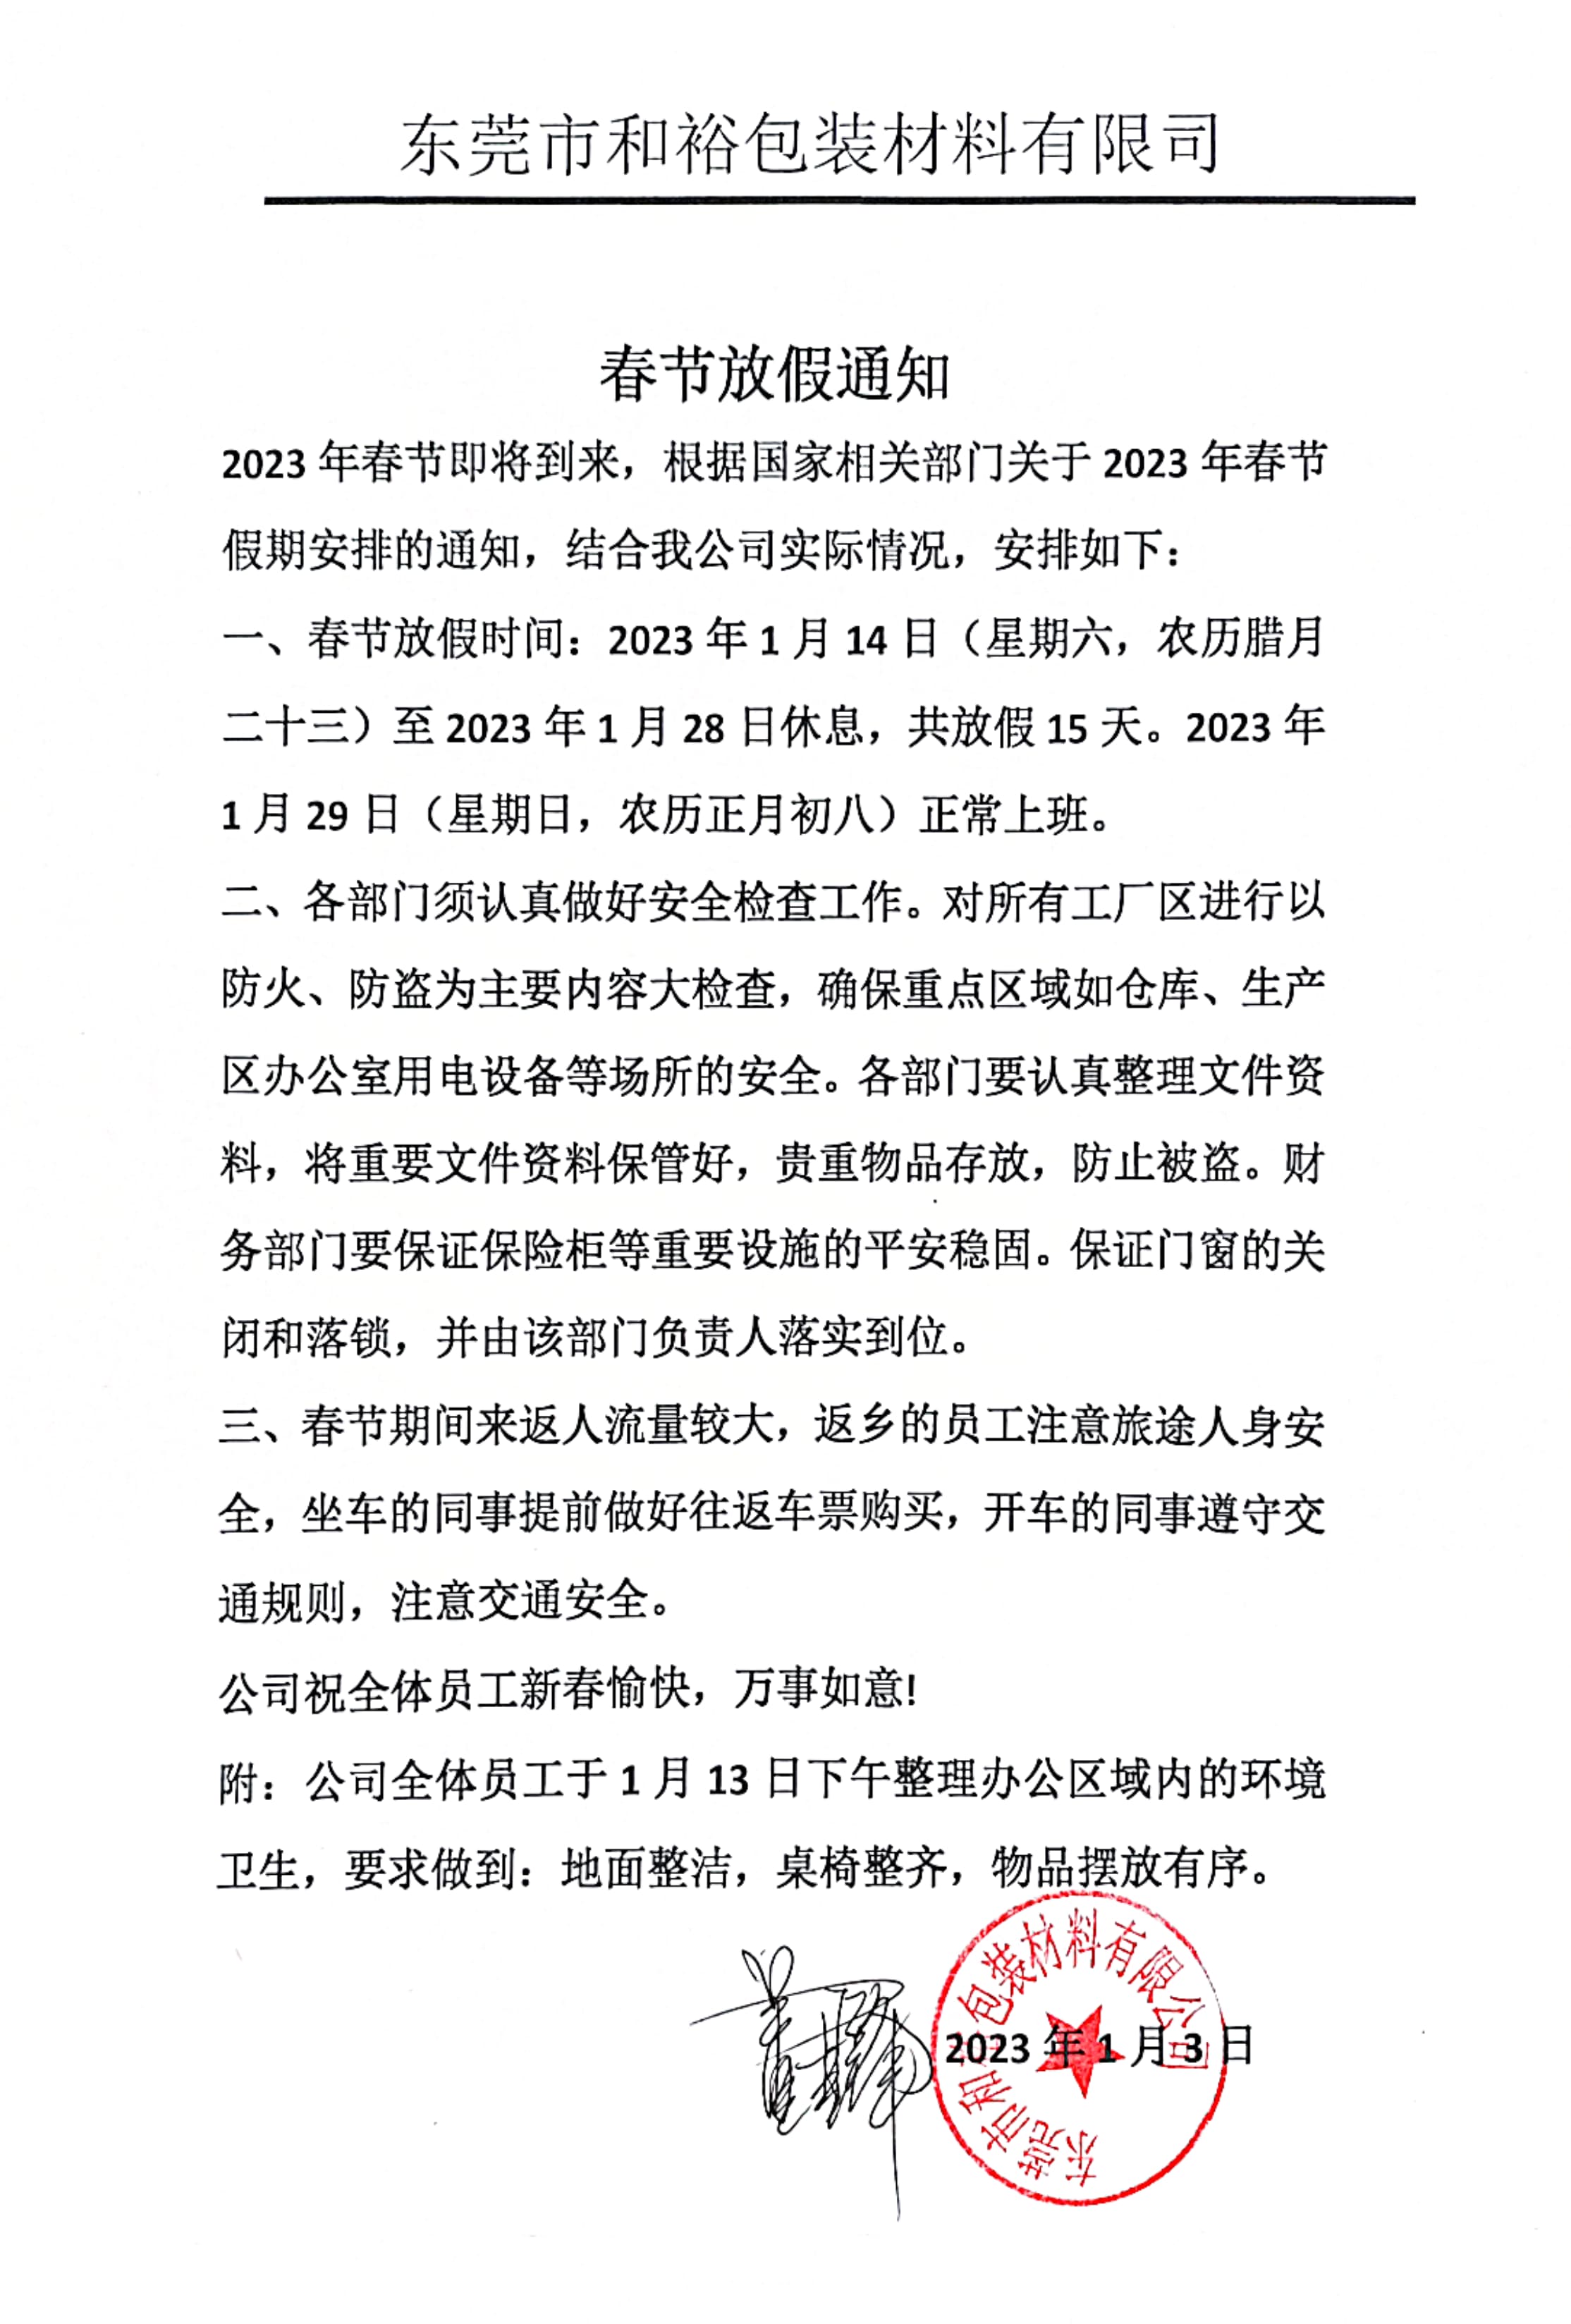 郴州市2023年和裕包装春节放假通知